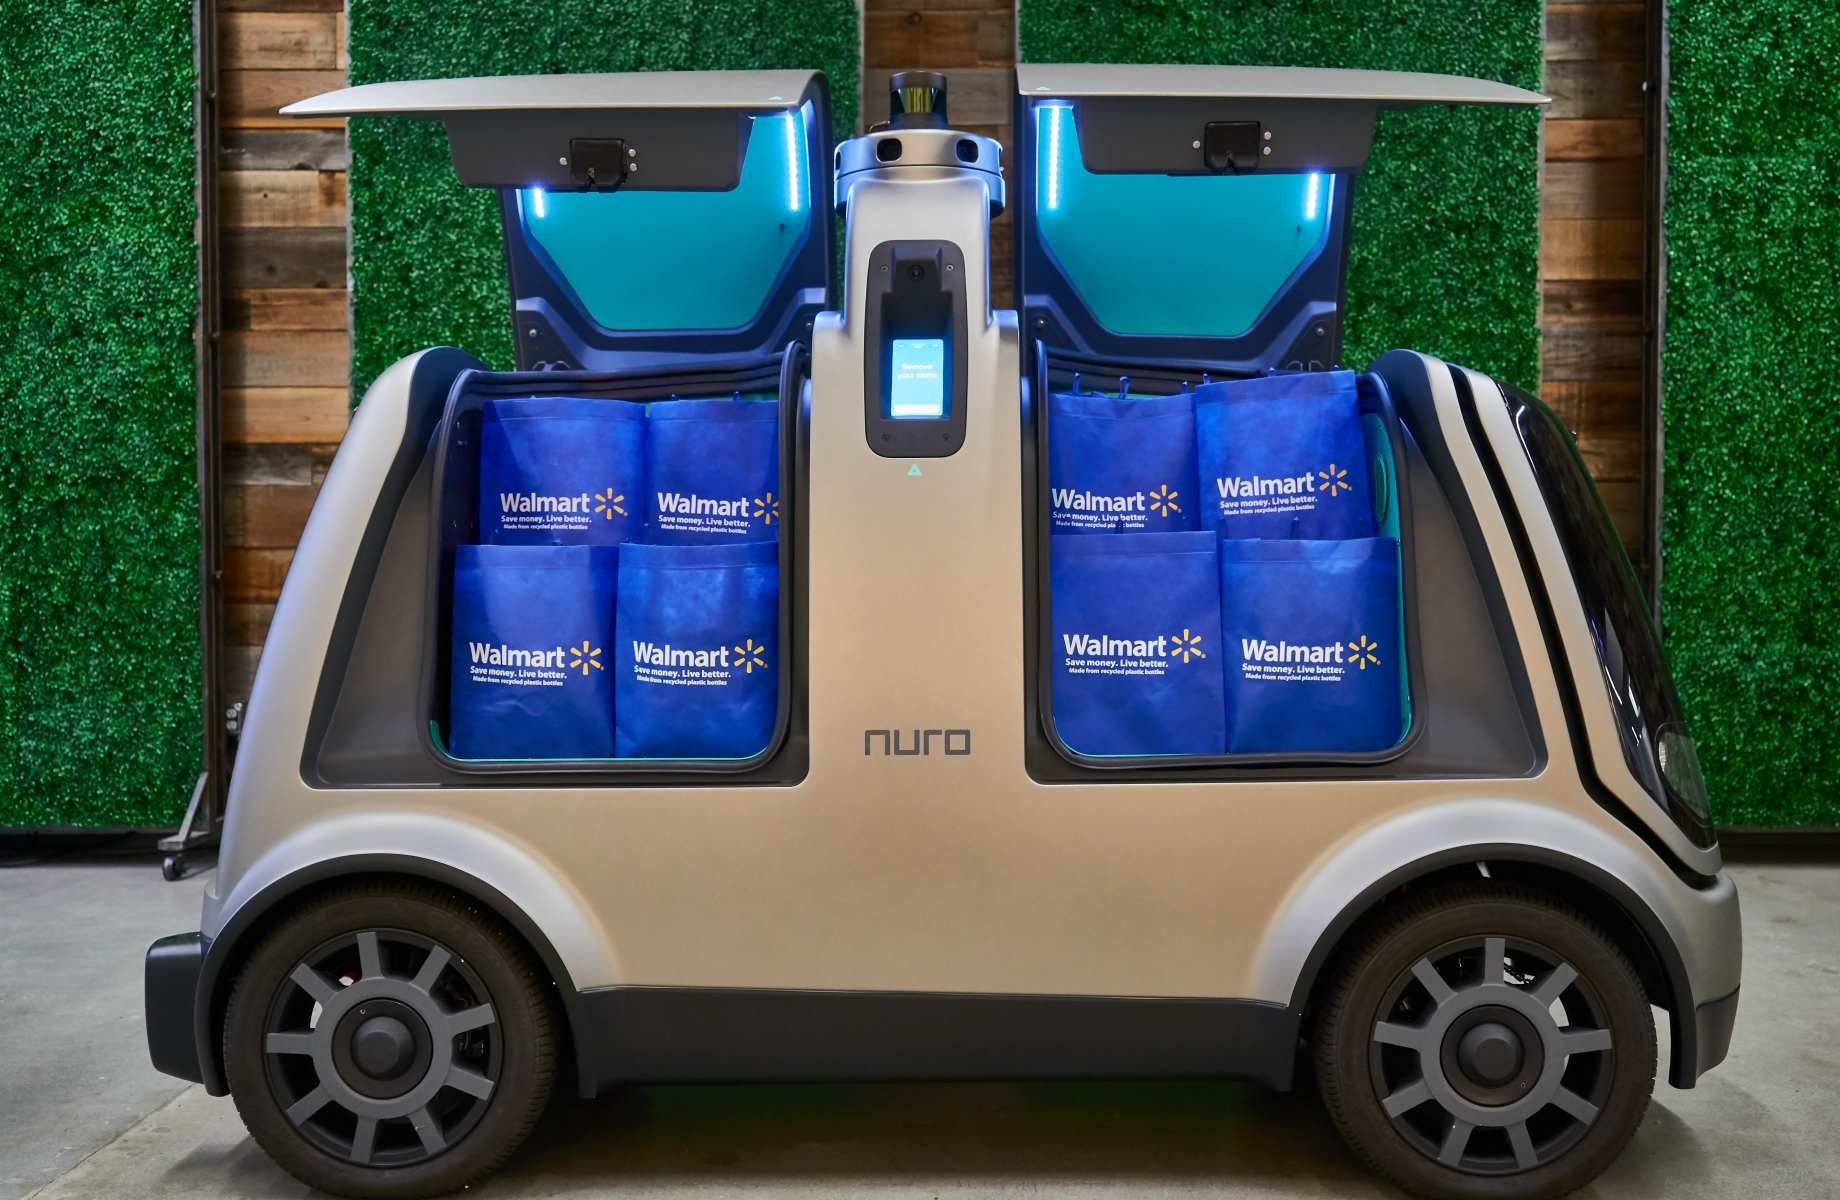 Nuro autonomous food delivery vehicles